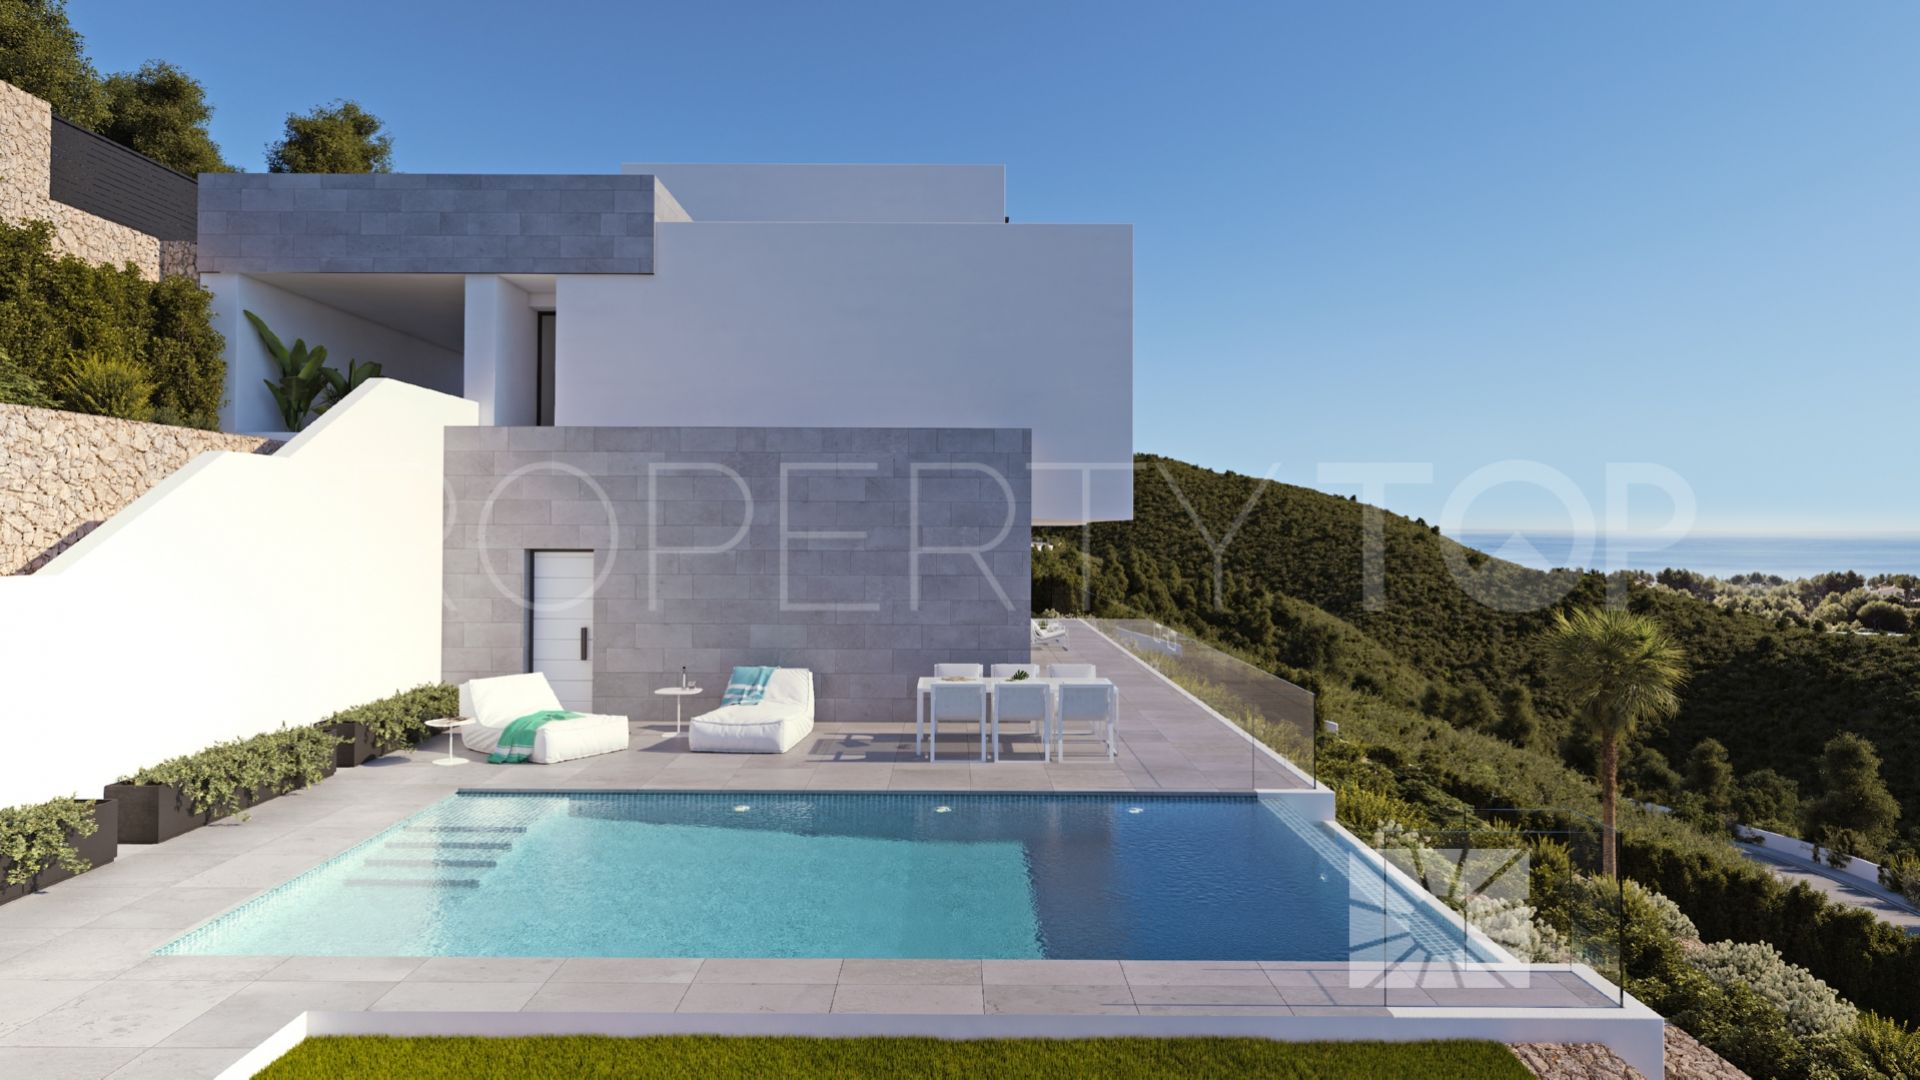 For sale Sierra de Altea villa with 4 bedrooms